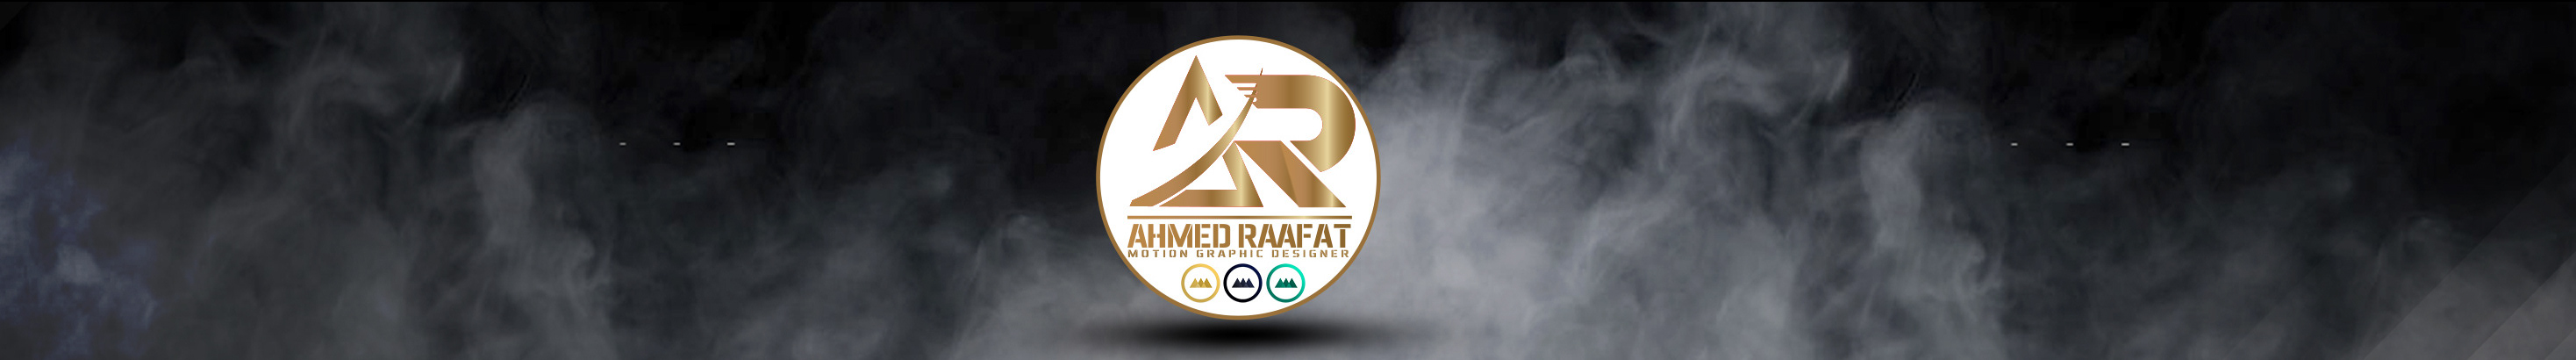 Ahmed Raafat のプロファイルバナー